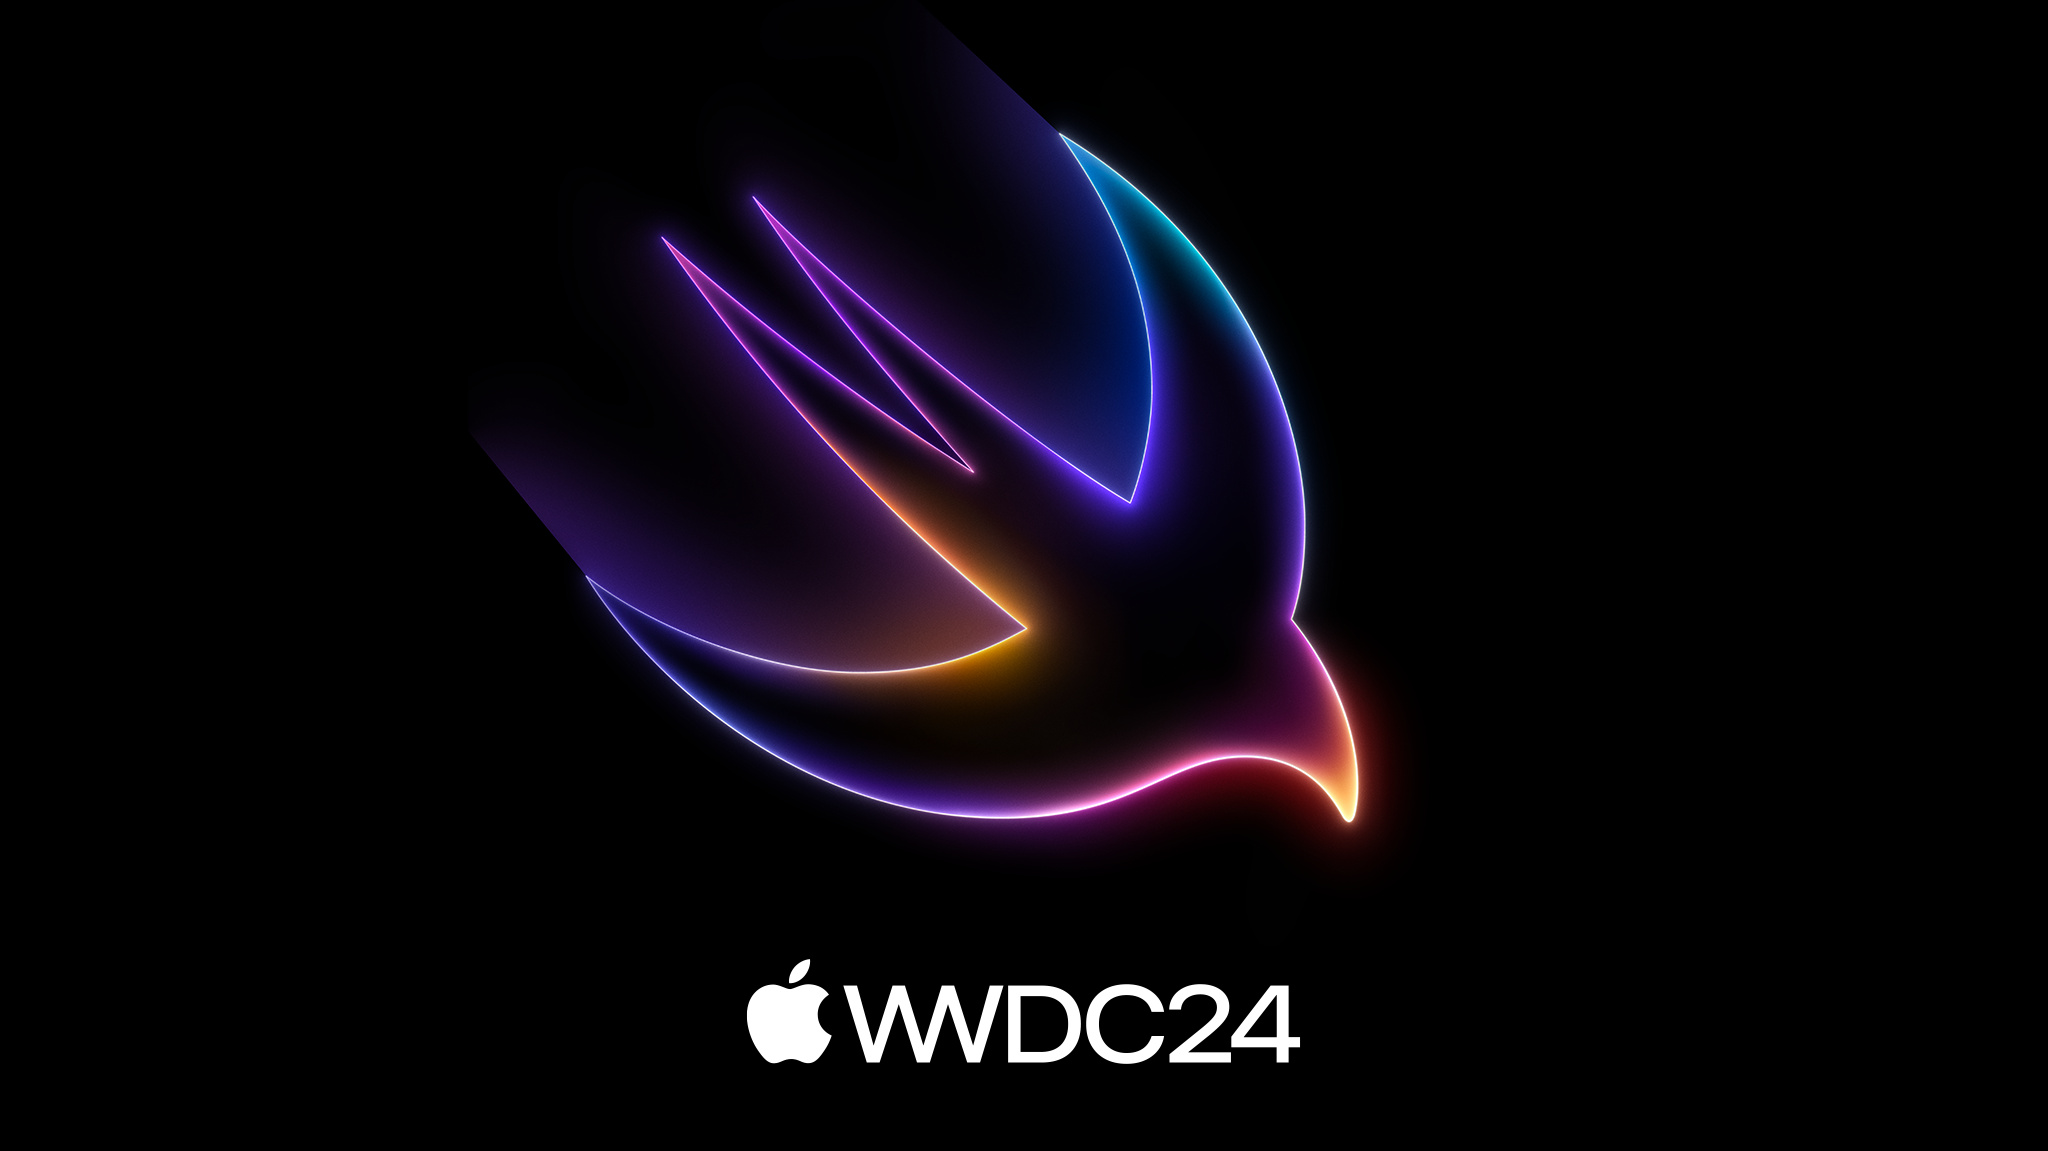 黒の背景に赤、紫、青の輝くグラデーションで描かれた、「WWDC24」というフレーズ